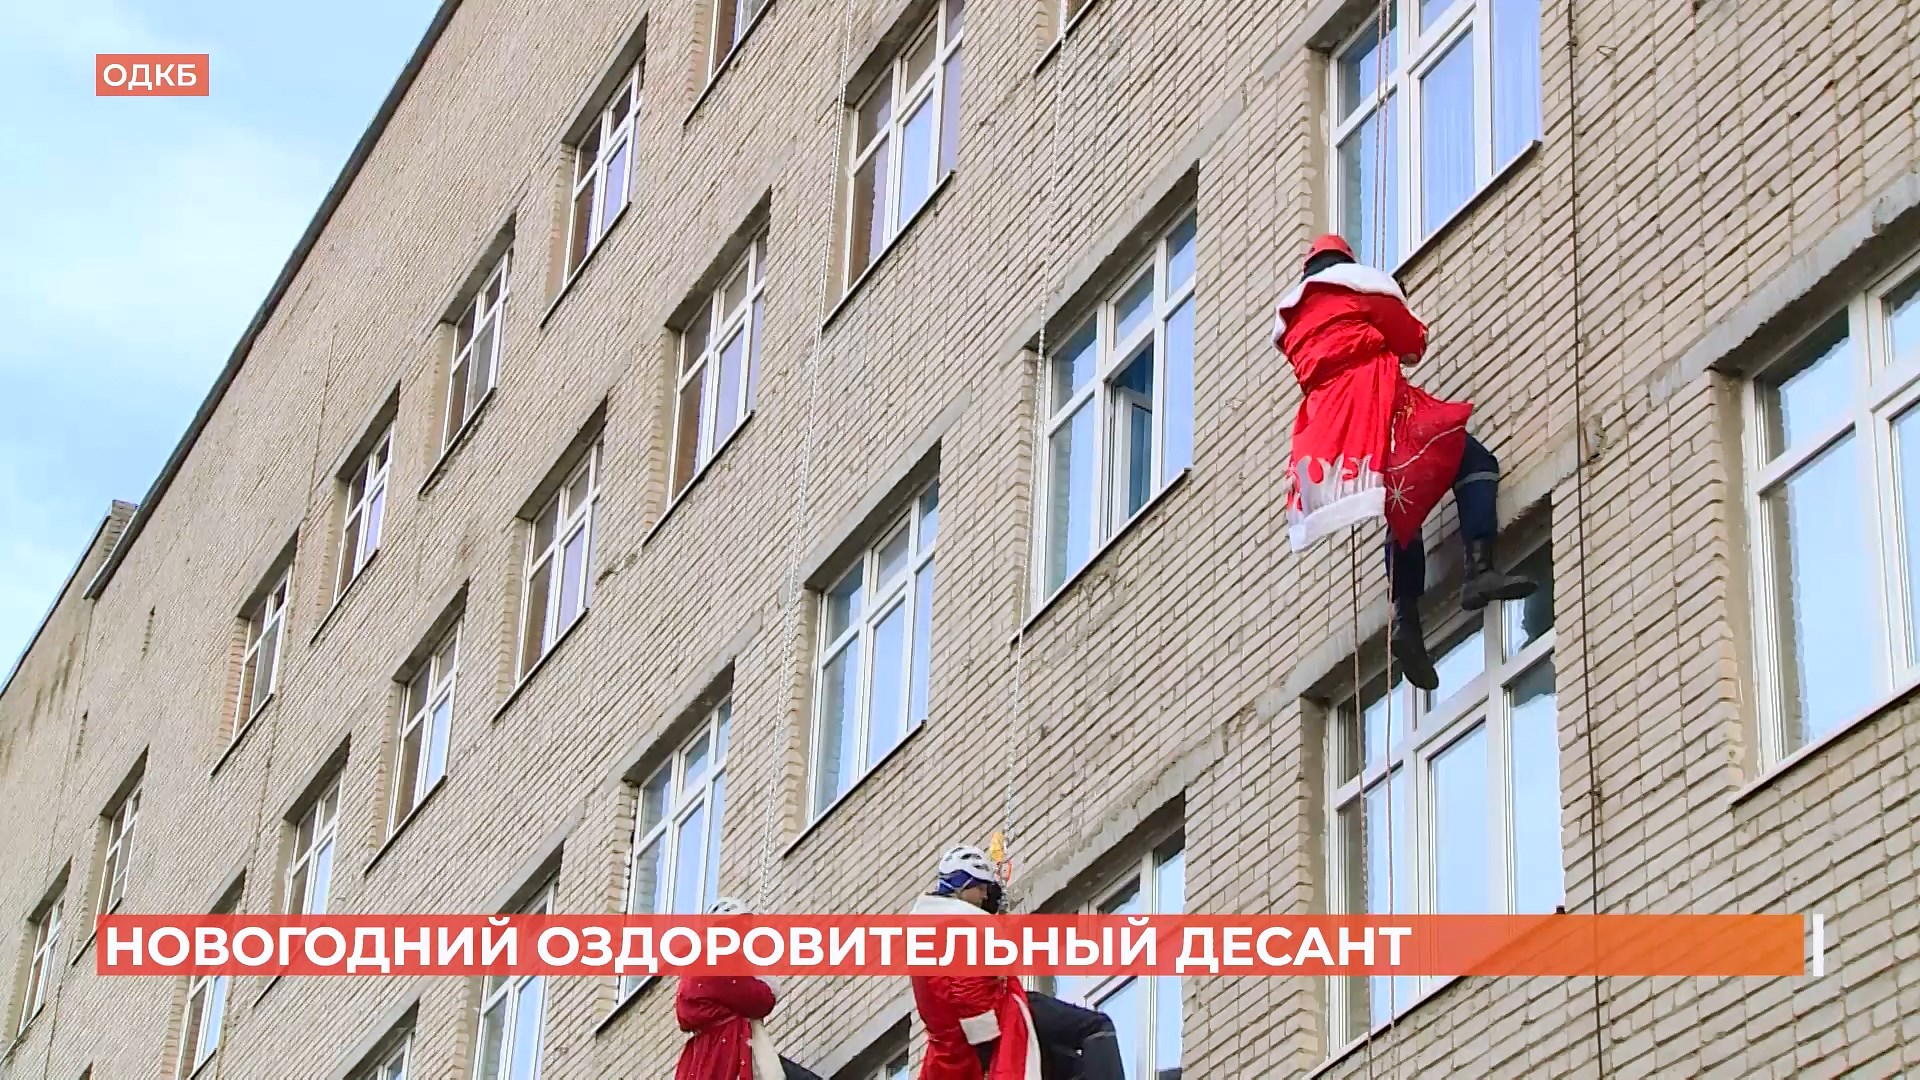 Деды Морозы спустились с крыши к маленьким пациентам ОДКБ